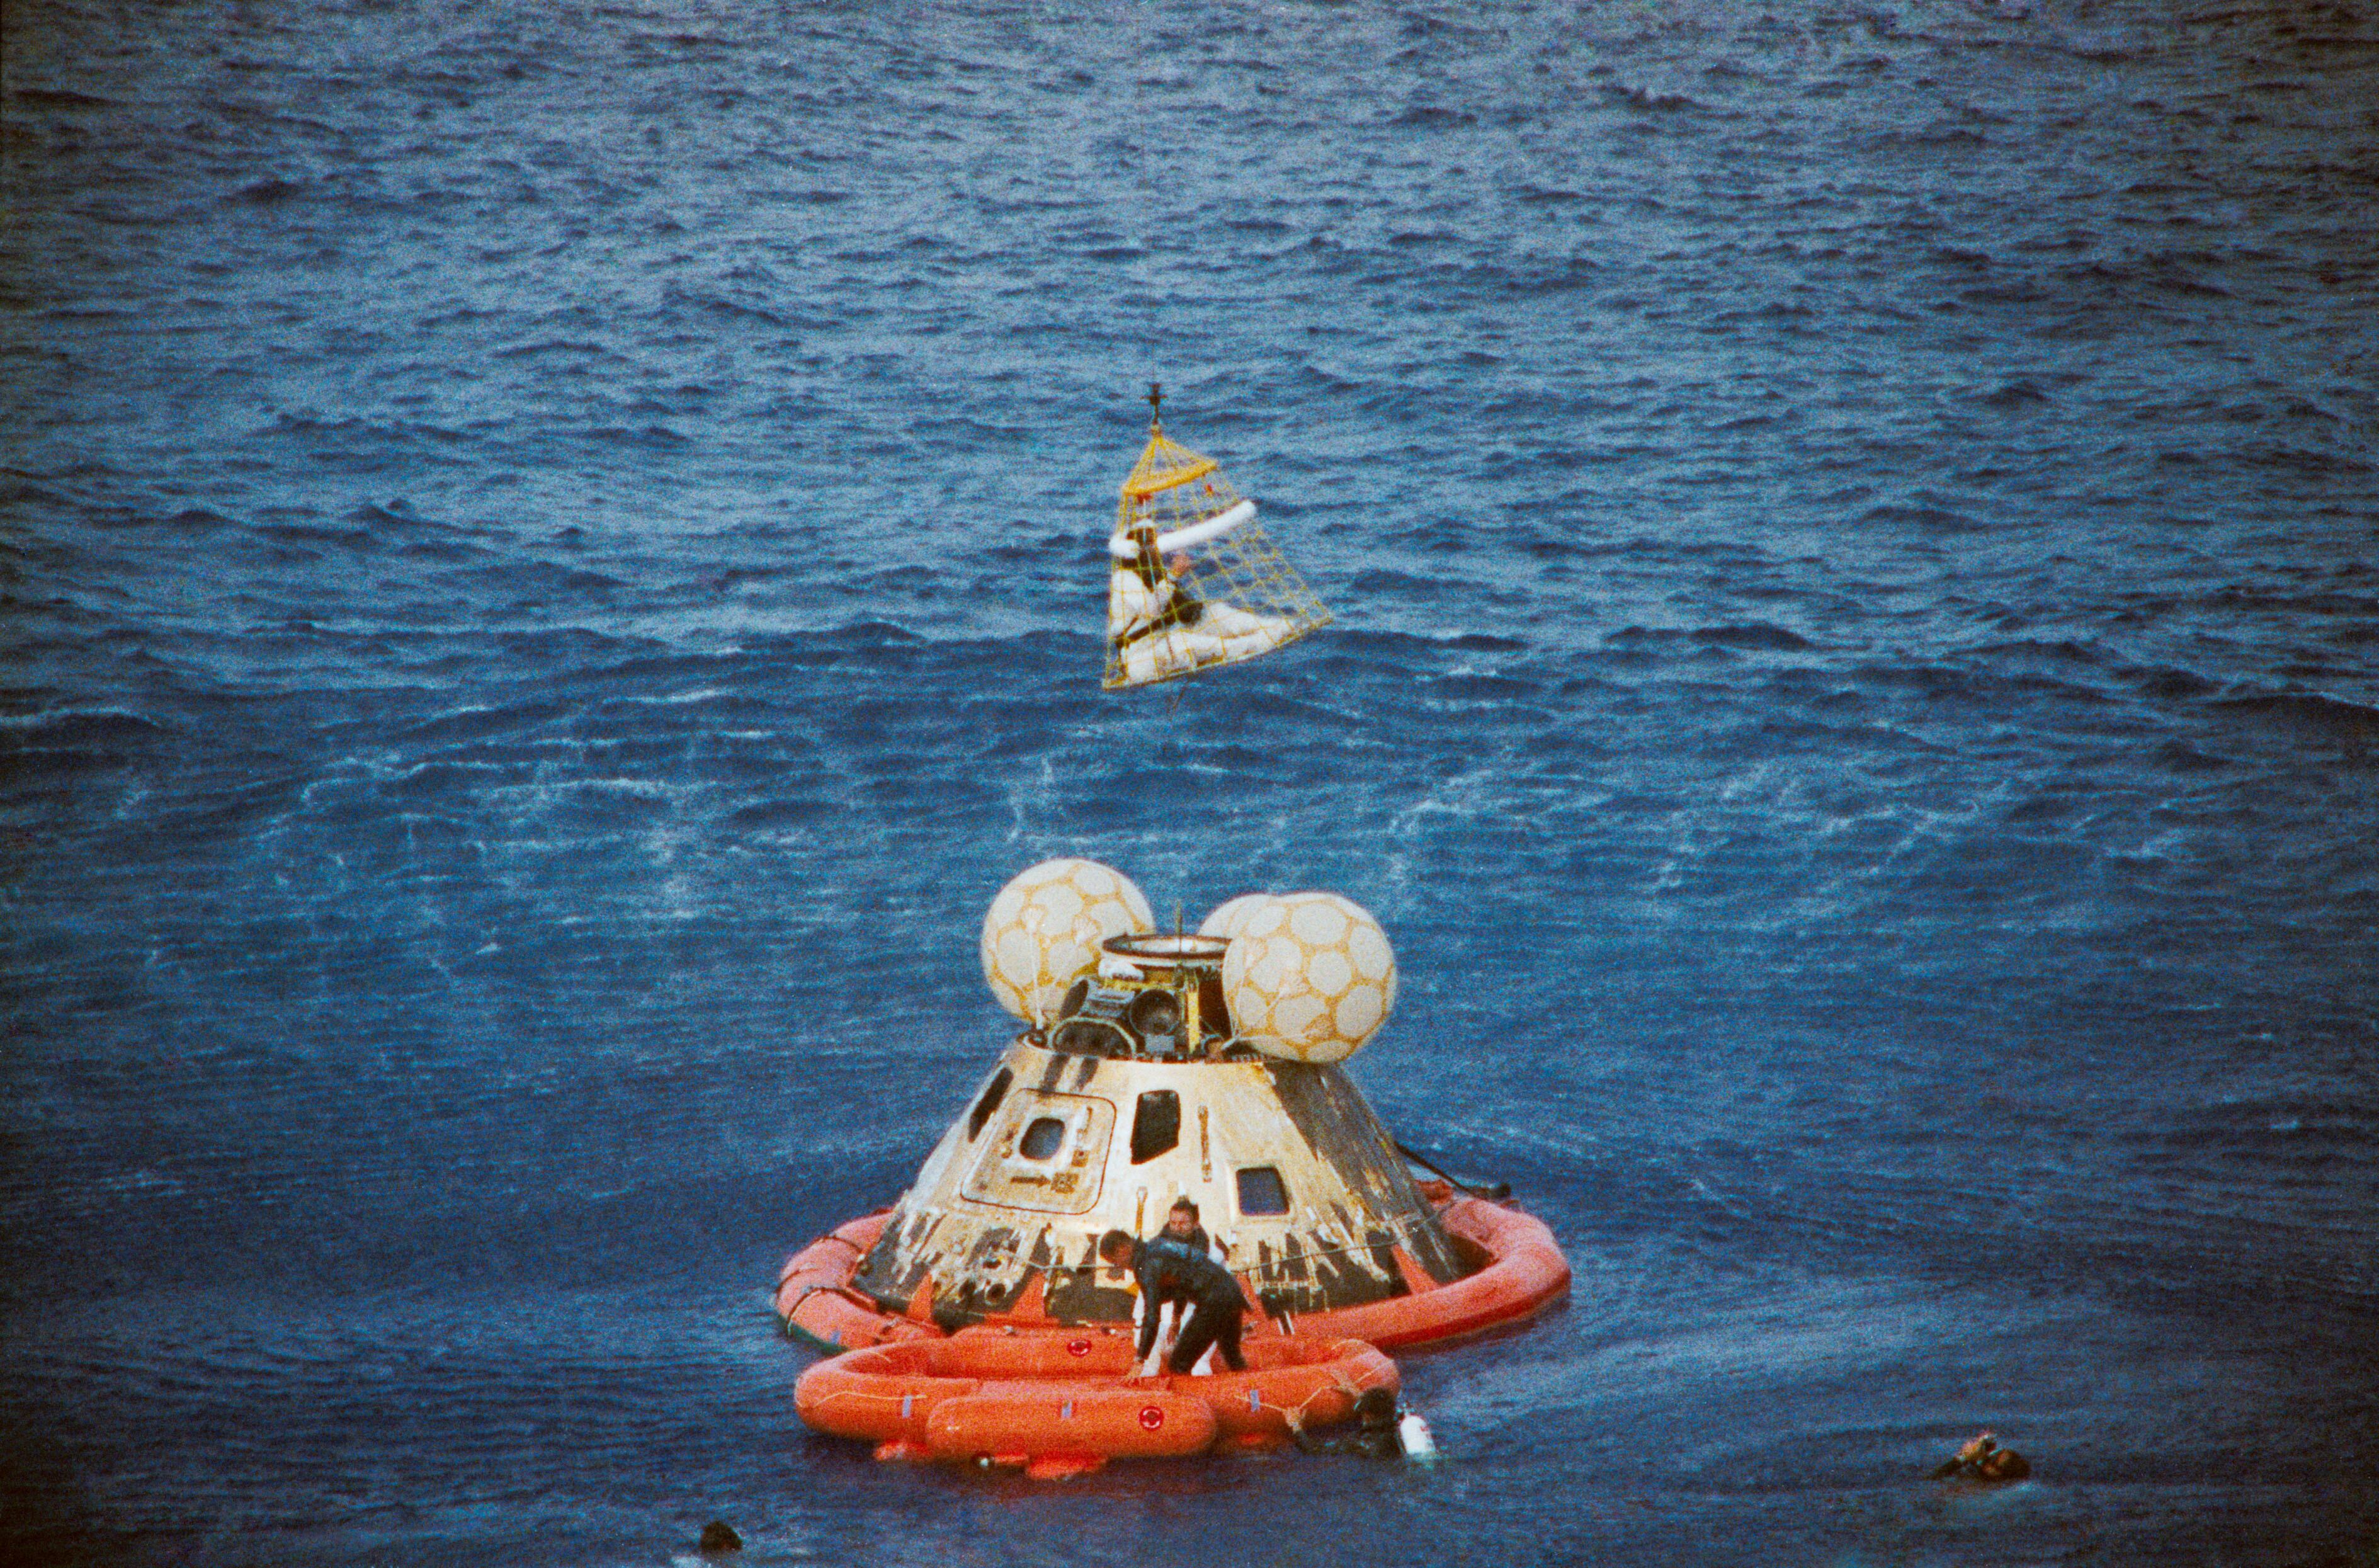 El 'Apollo 13', tras haber amerizado después de sufrir un accidente en el espacio.